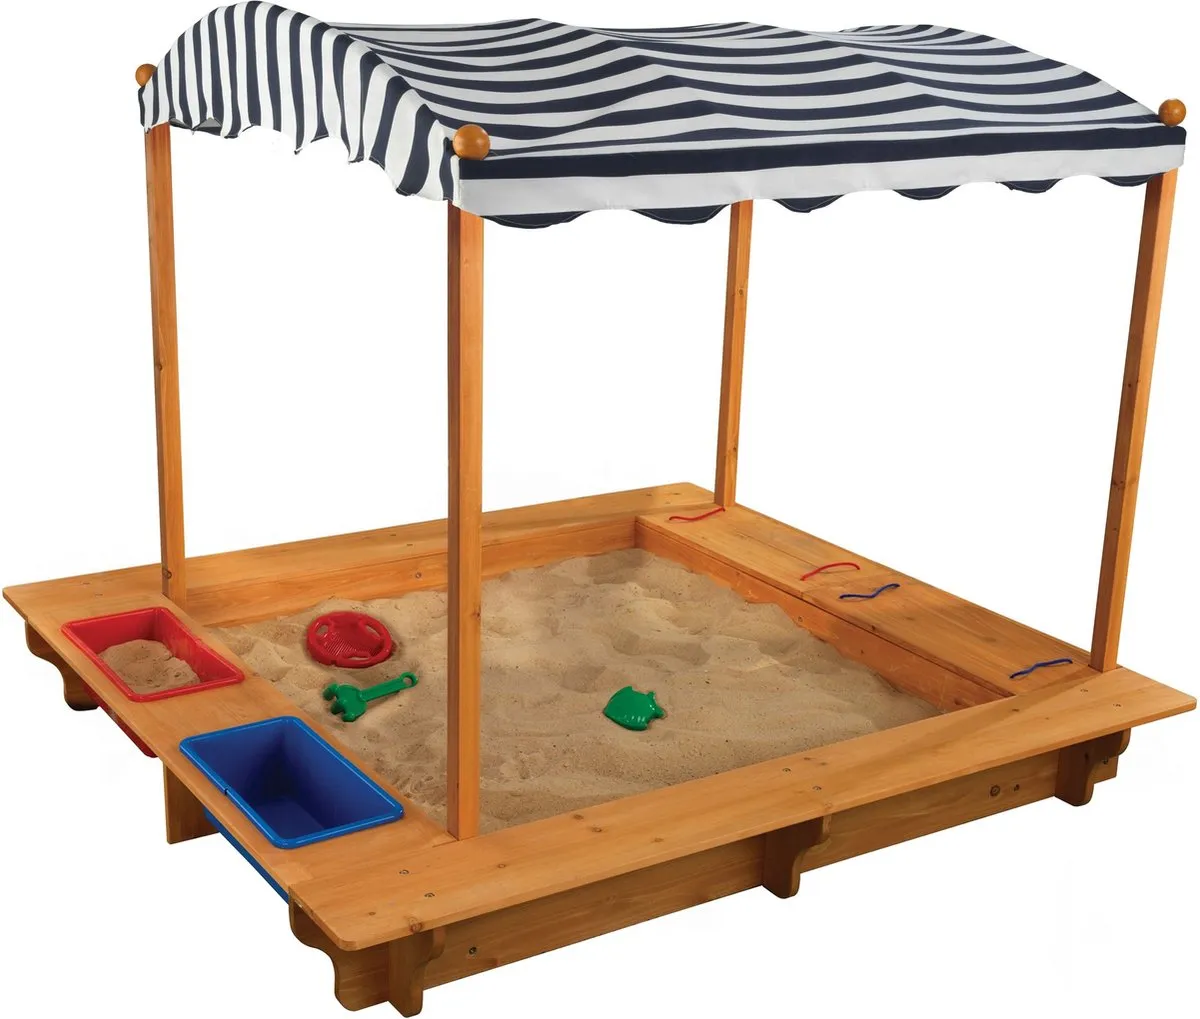 KidKraft Zandbak met zonnedak voor buiten - marineblauw en wit speelgoed